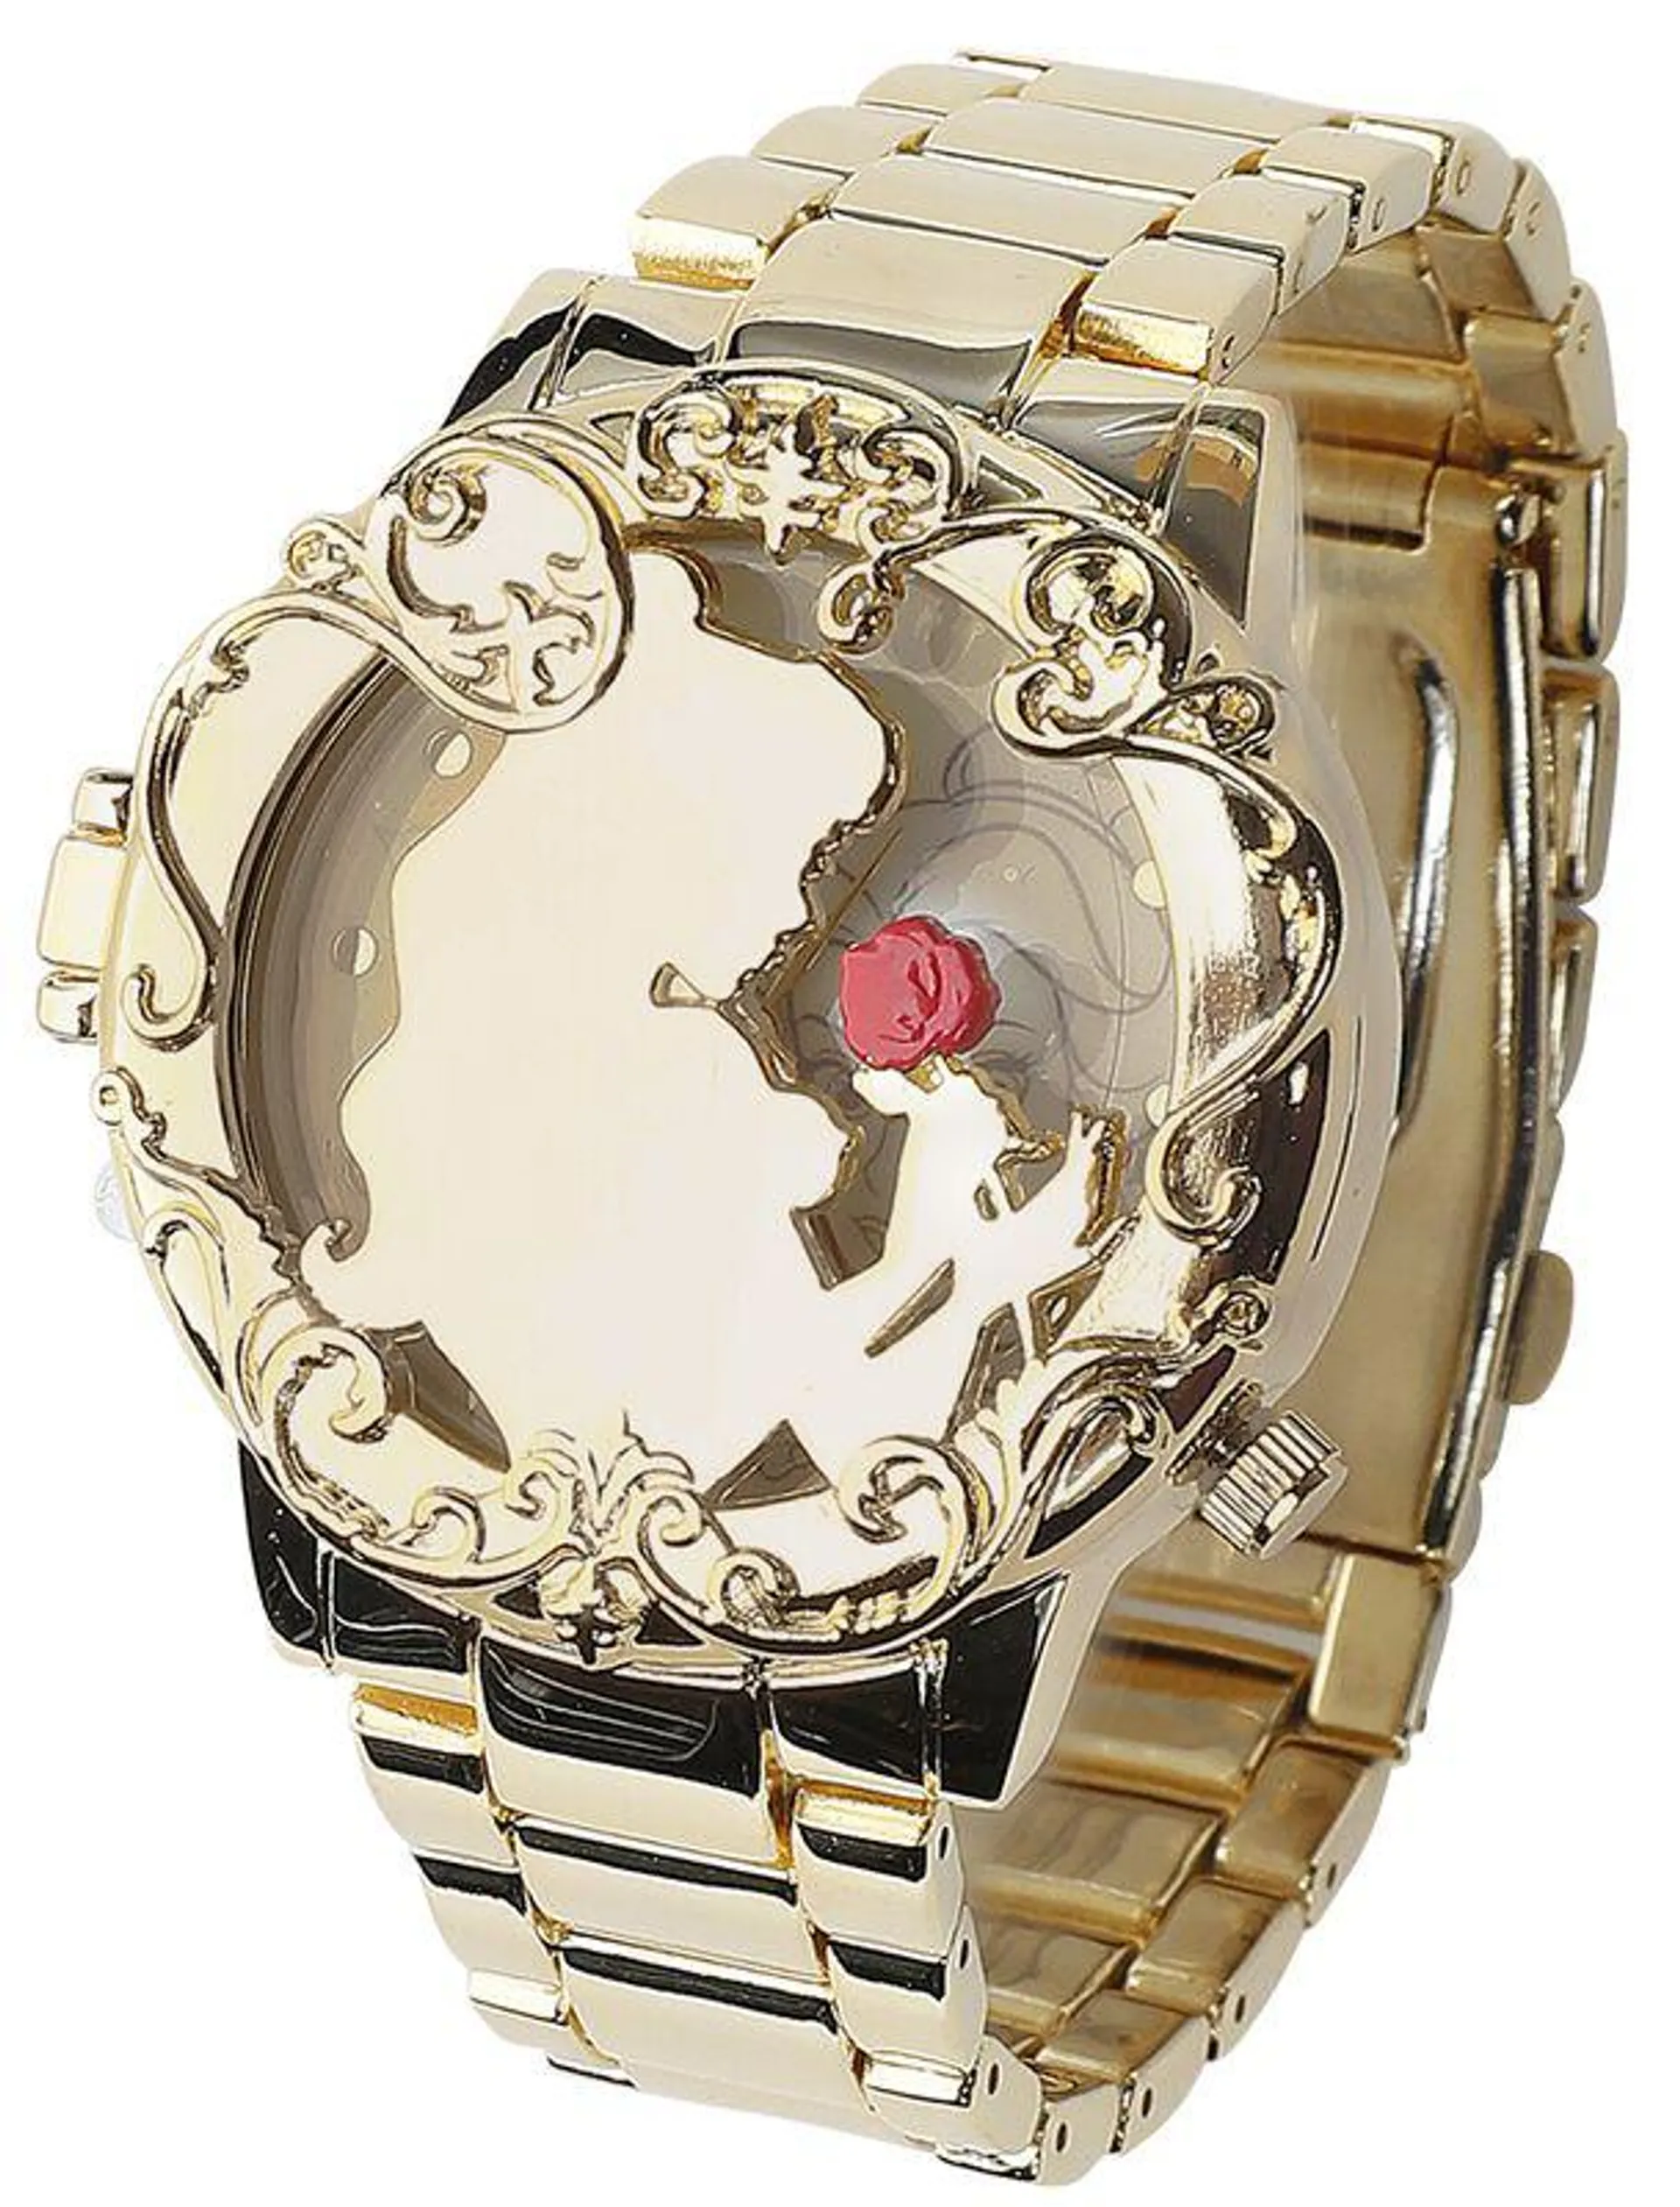 "Golden Belle" Armbanduhren goldfarben von Die Schöne und das Biest